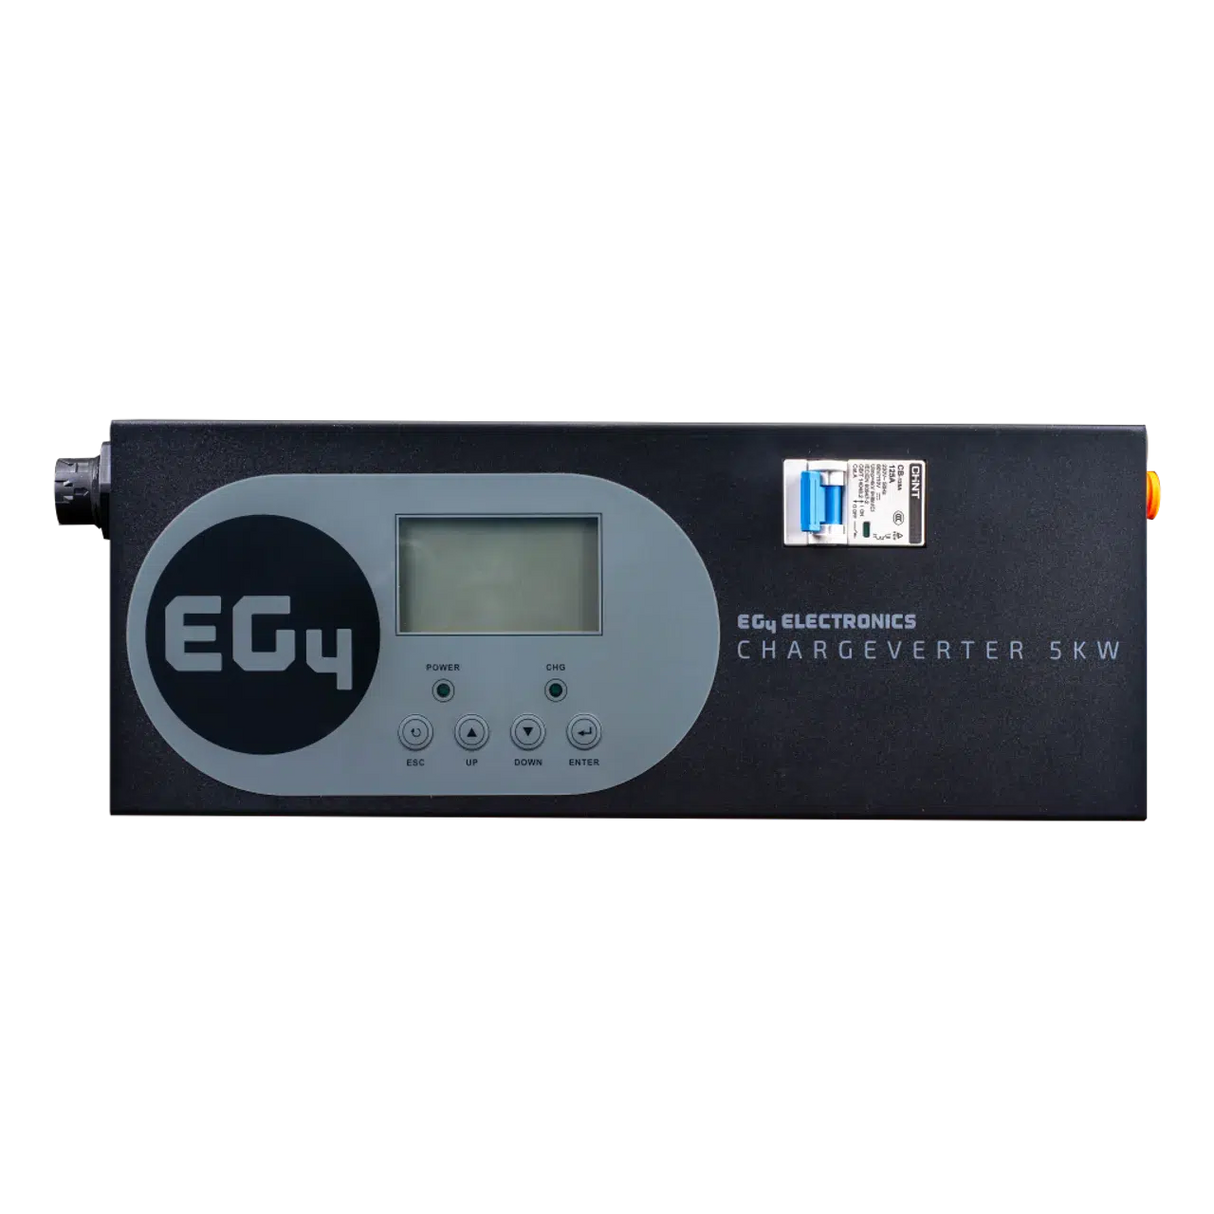 EG4 Chargeverter - GC | Solar Sovereign